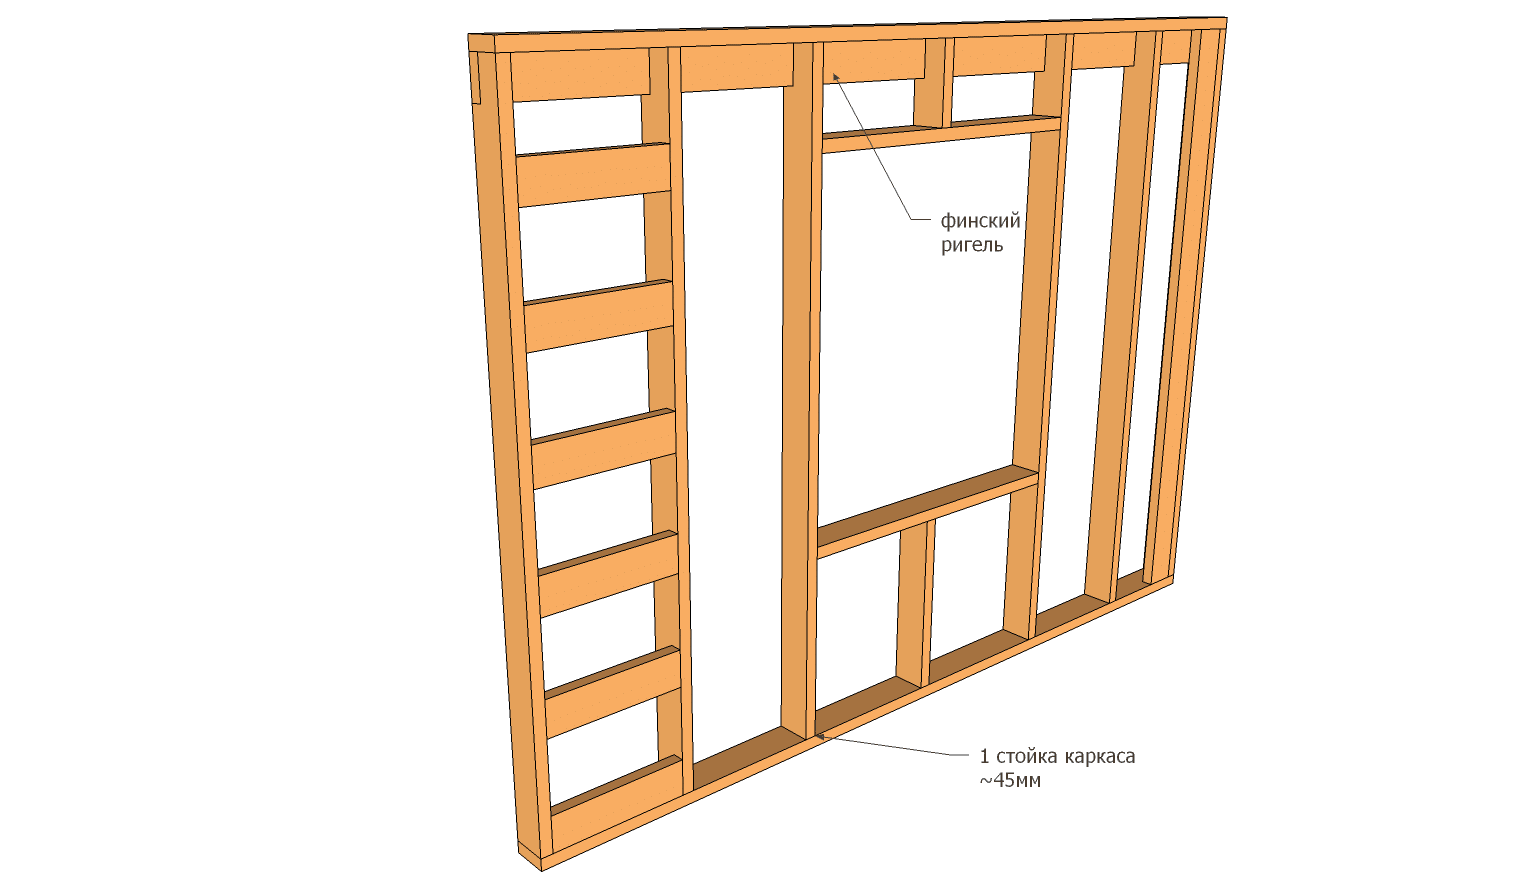 Установка входной металлической двери в деревянном доме: как правильно установить железную дверь своими руками, пошаговый монтаж